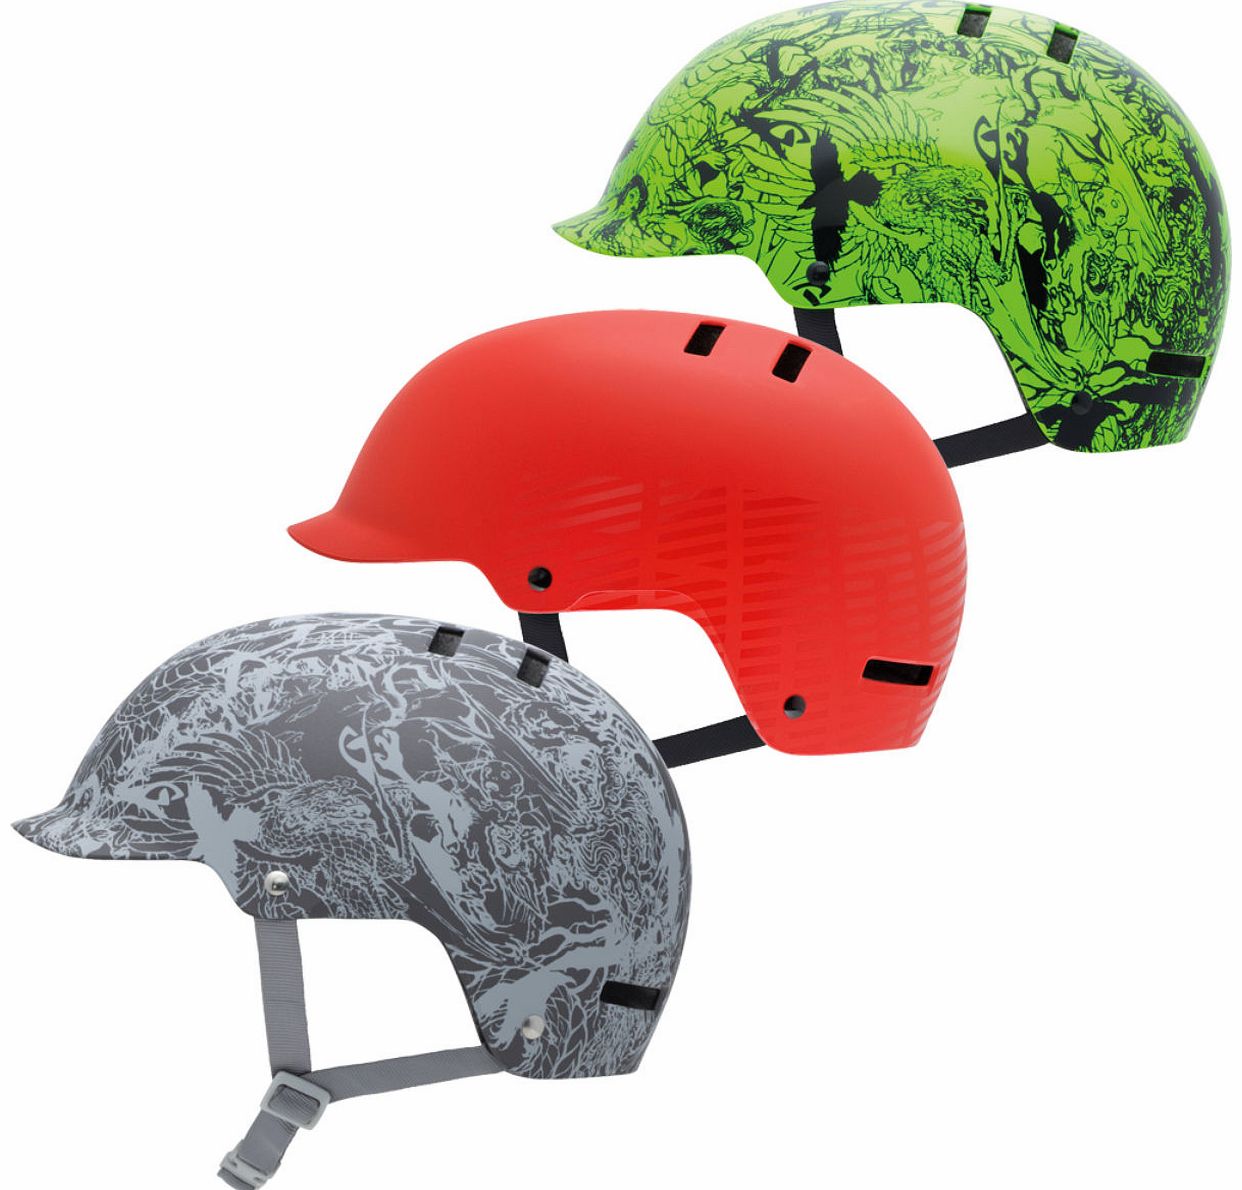 Surface Graphics Helmet - 2012 MTB Helmets